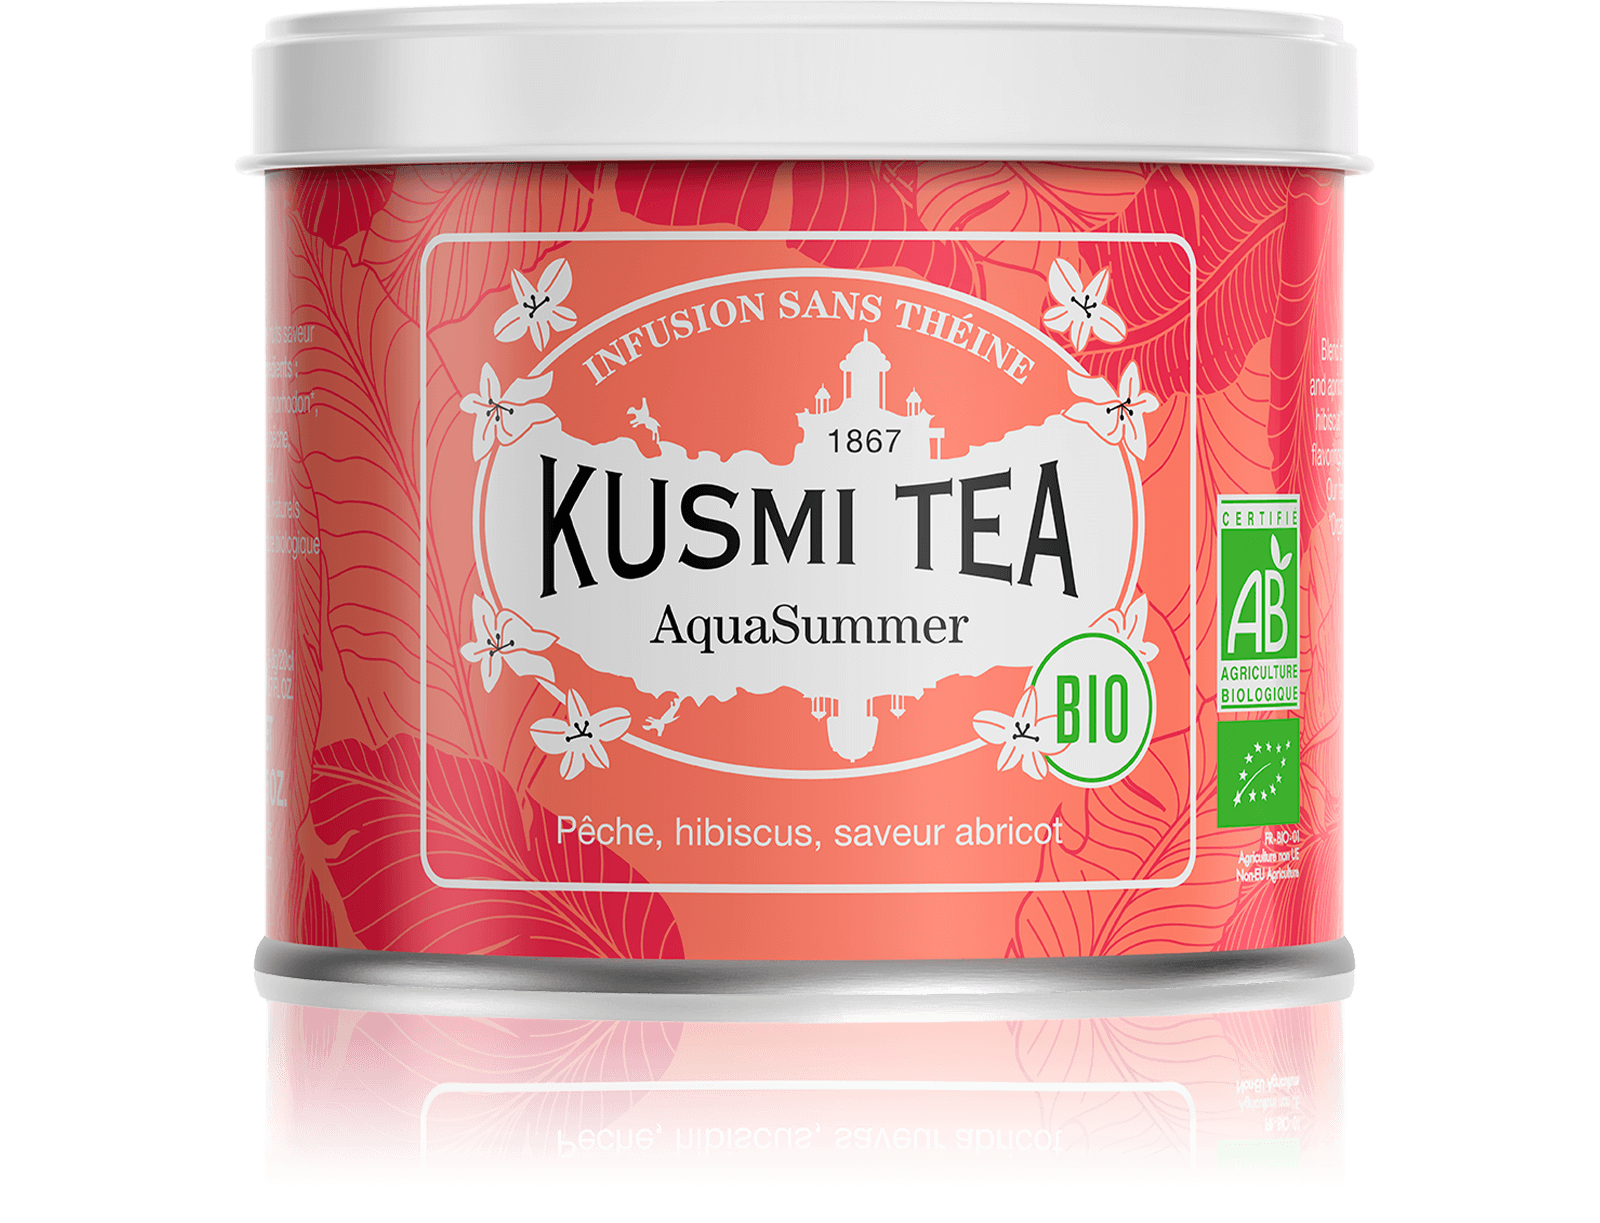 AquaSummer Infusion de fruits bio - Infusion hibiscus, pêche, abricot - Boîte de thé en vrac - Kusmi Tea